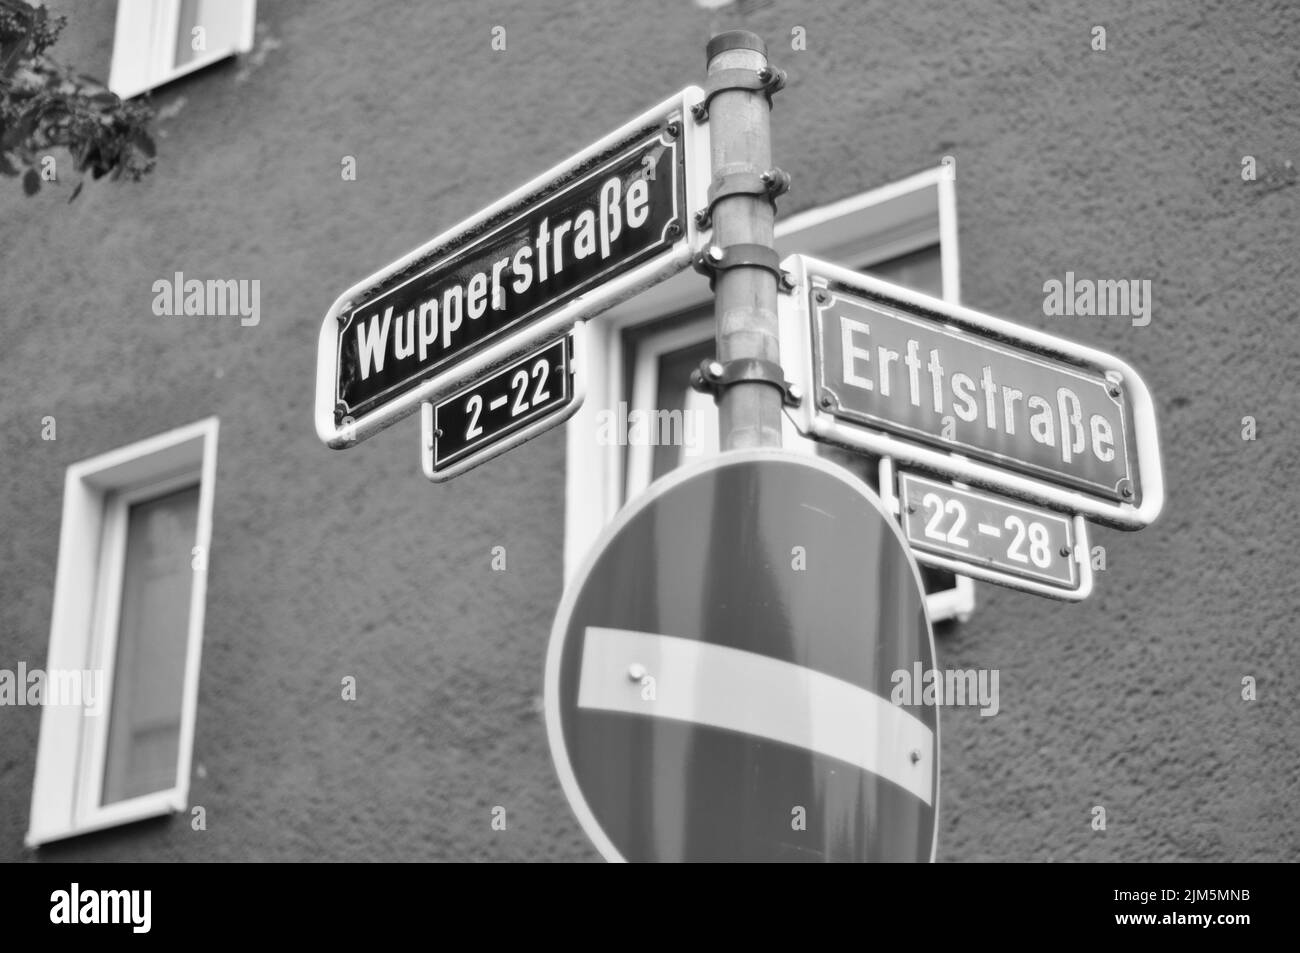 Un'immagine in scala di grigi con le indicazioni stradali che indicano l'incrocio tra le strade Wupperstrasse ed Erftstrasse Foto Stock